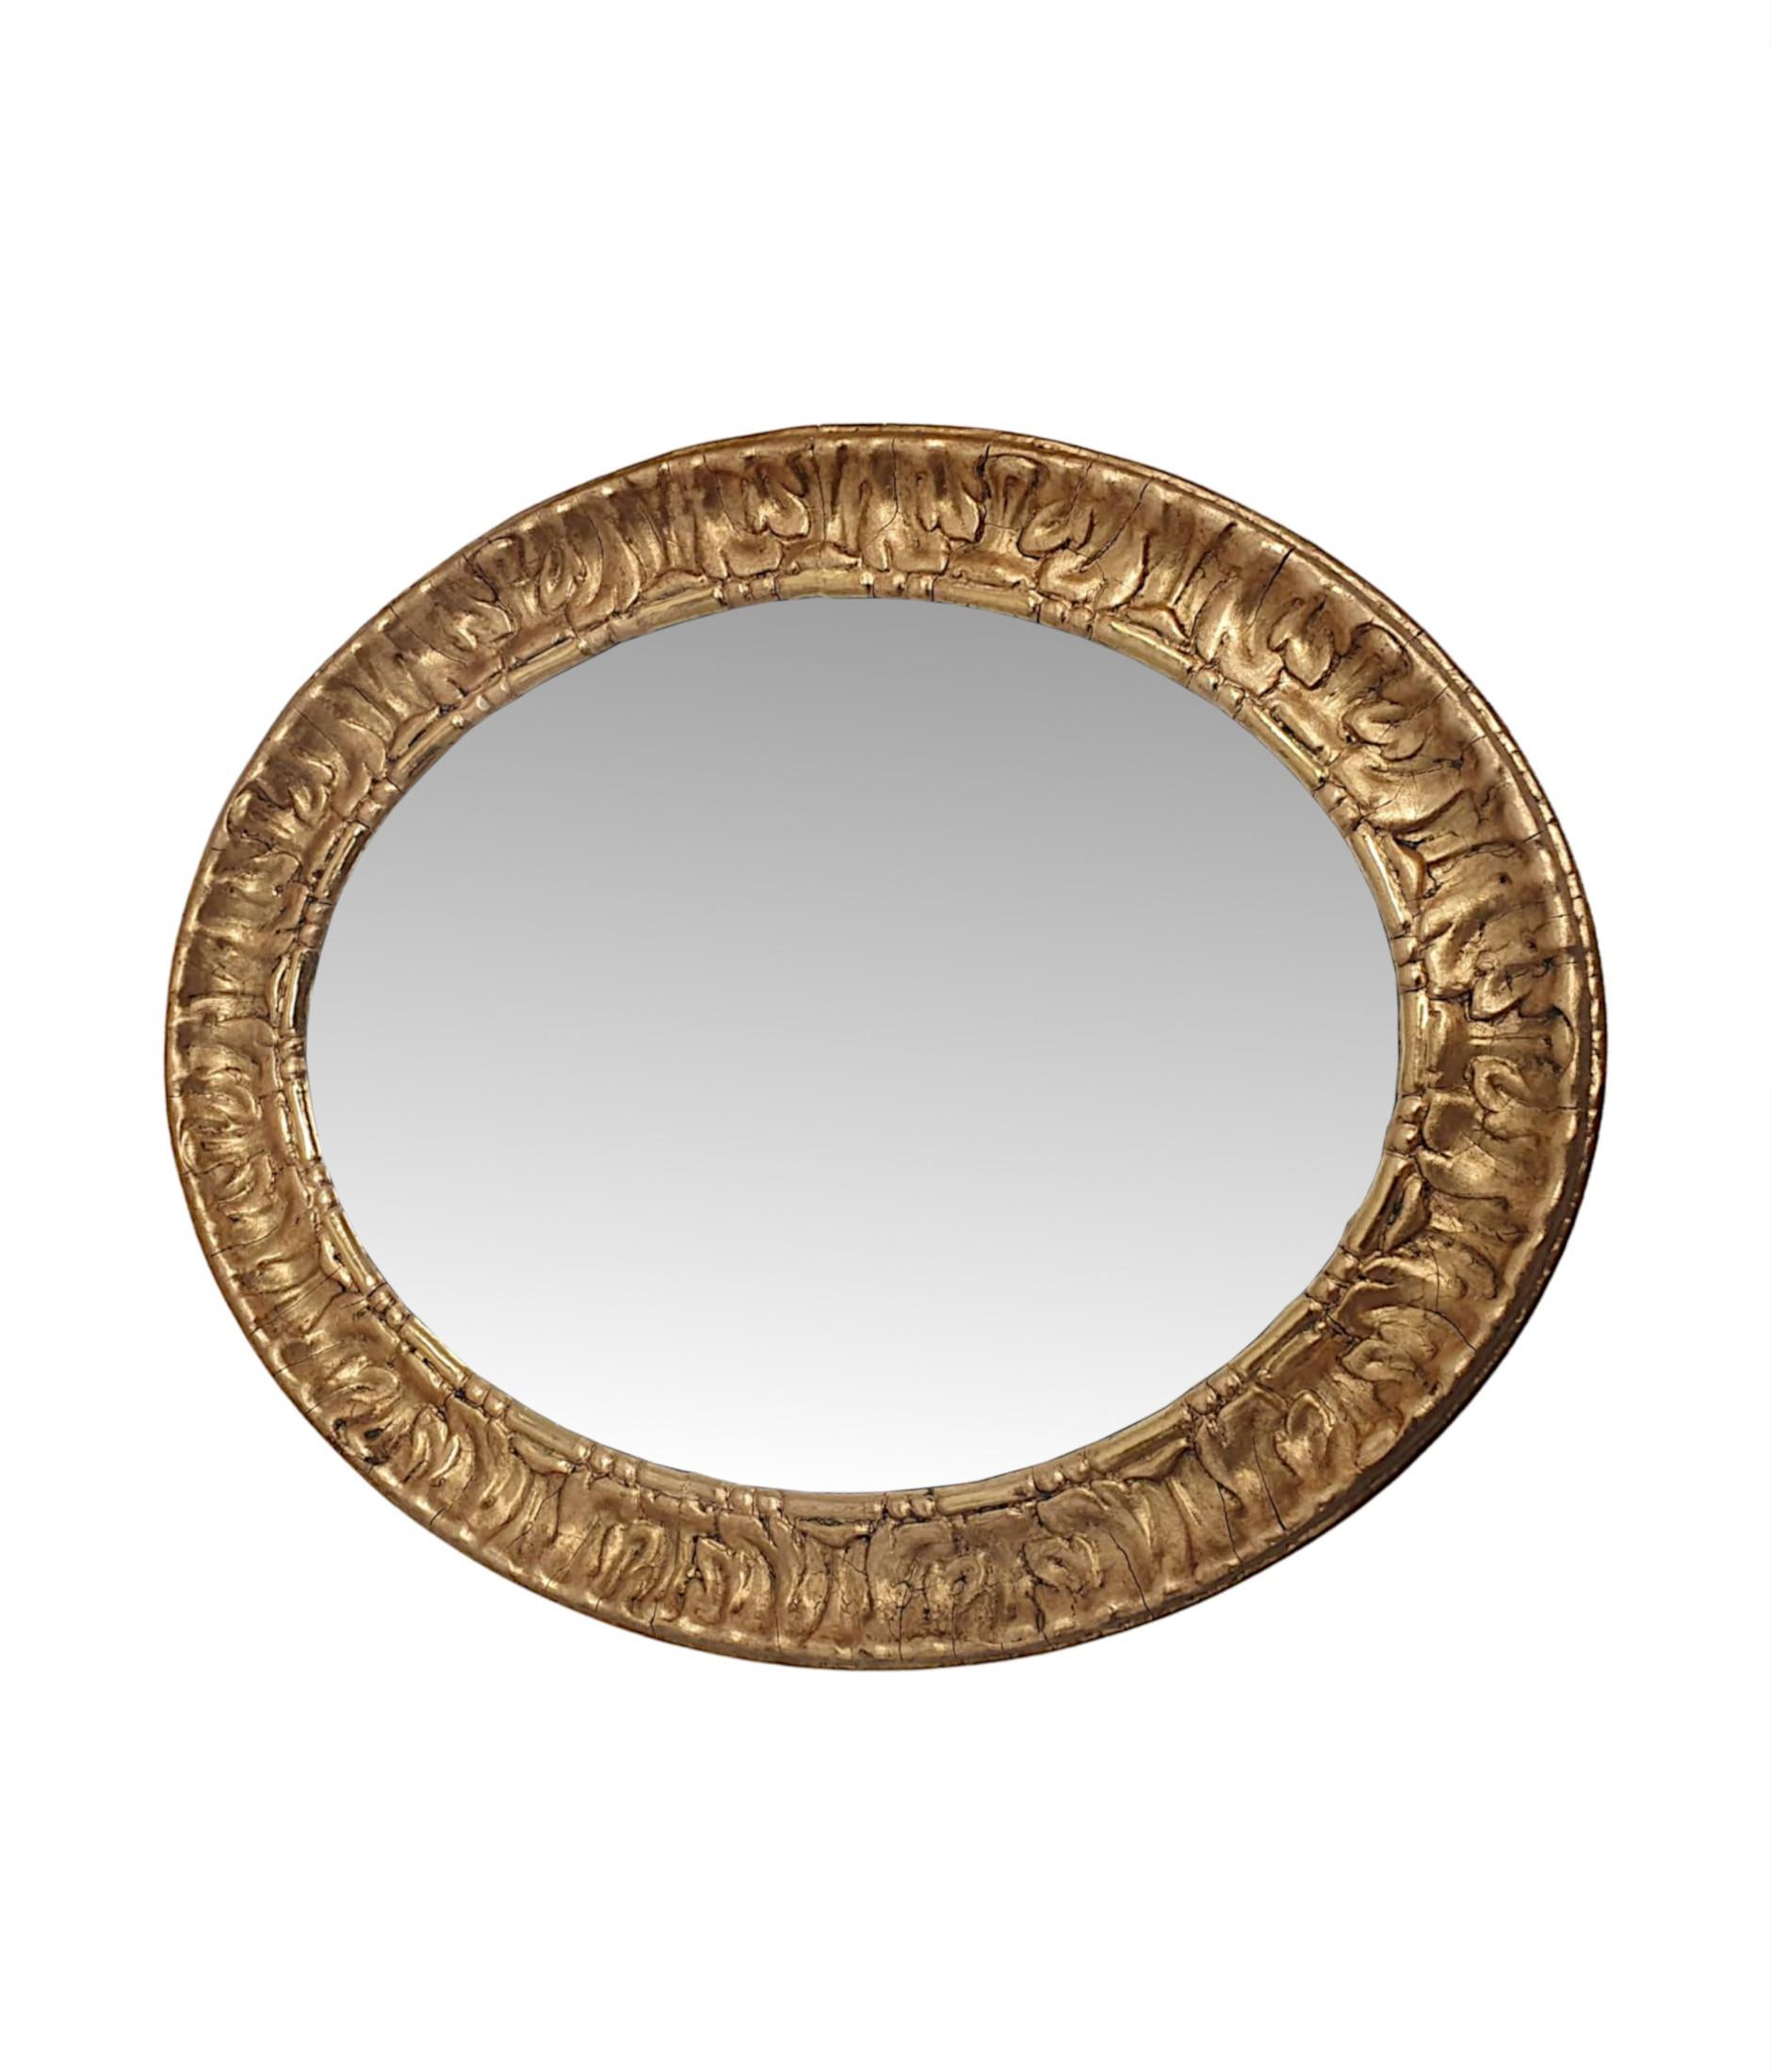 Ein schönes Paar vergoldeter Spiegel aus dem 19. Jahrhundert, fein von Hand geschnitzt, vollständig restauriert und von außergewöhnlicher Qualität.  Die ovale, abgeschrägte Spiegelglasplatte befindet sich in einem fabelhaften Rahmen aus vergoldetem